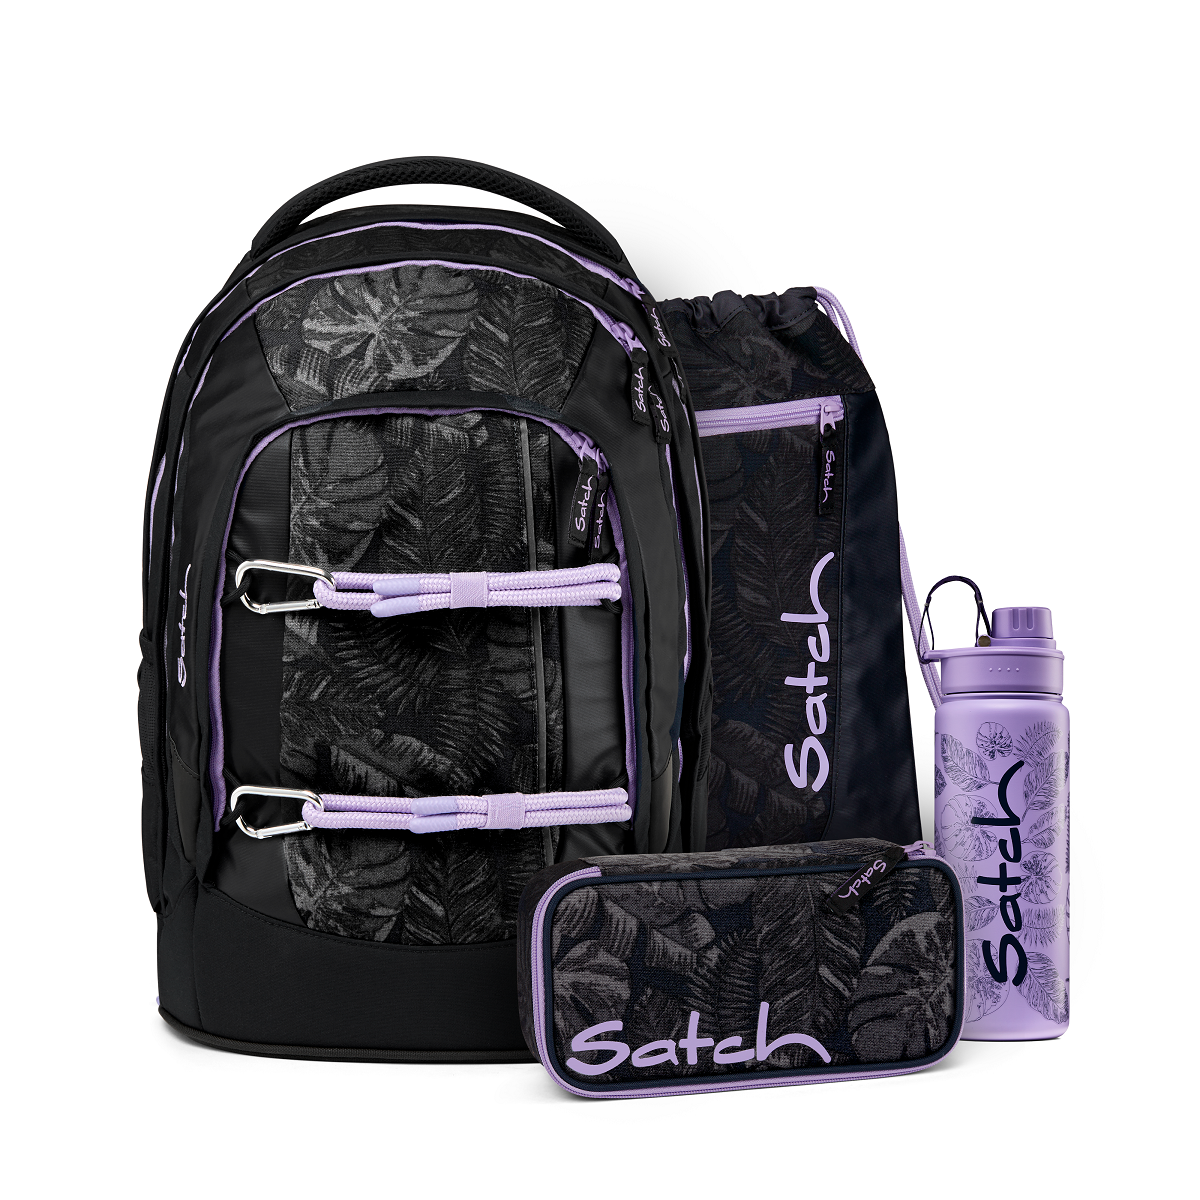 satch pack 4tlg.Set Bondi Beach Edition Schulrucksack,Schlamperbox, S,  249,95 €